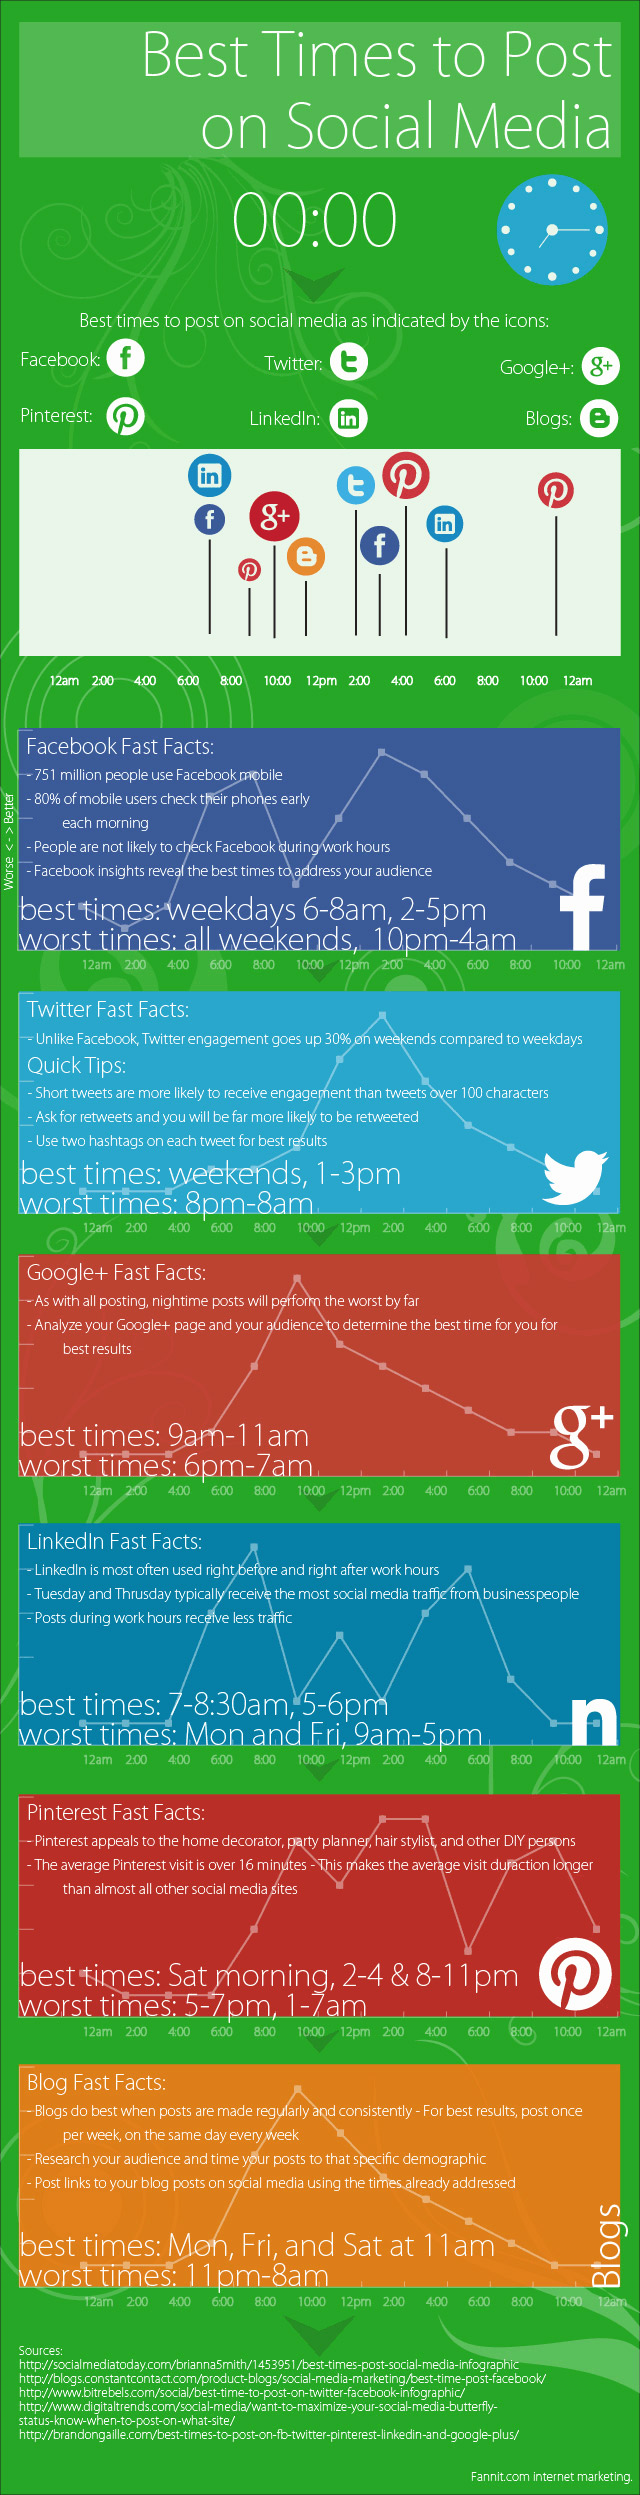 beste-tijden-voor-social-media-infographic